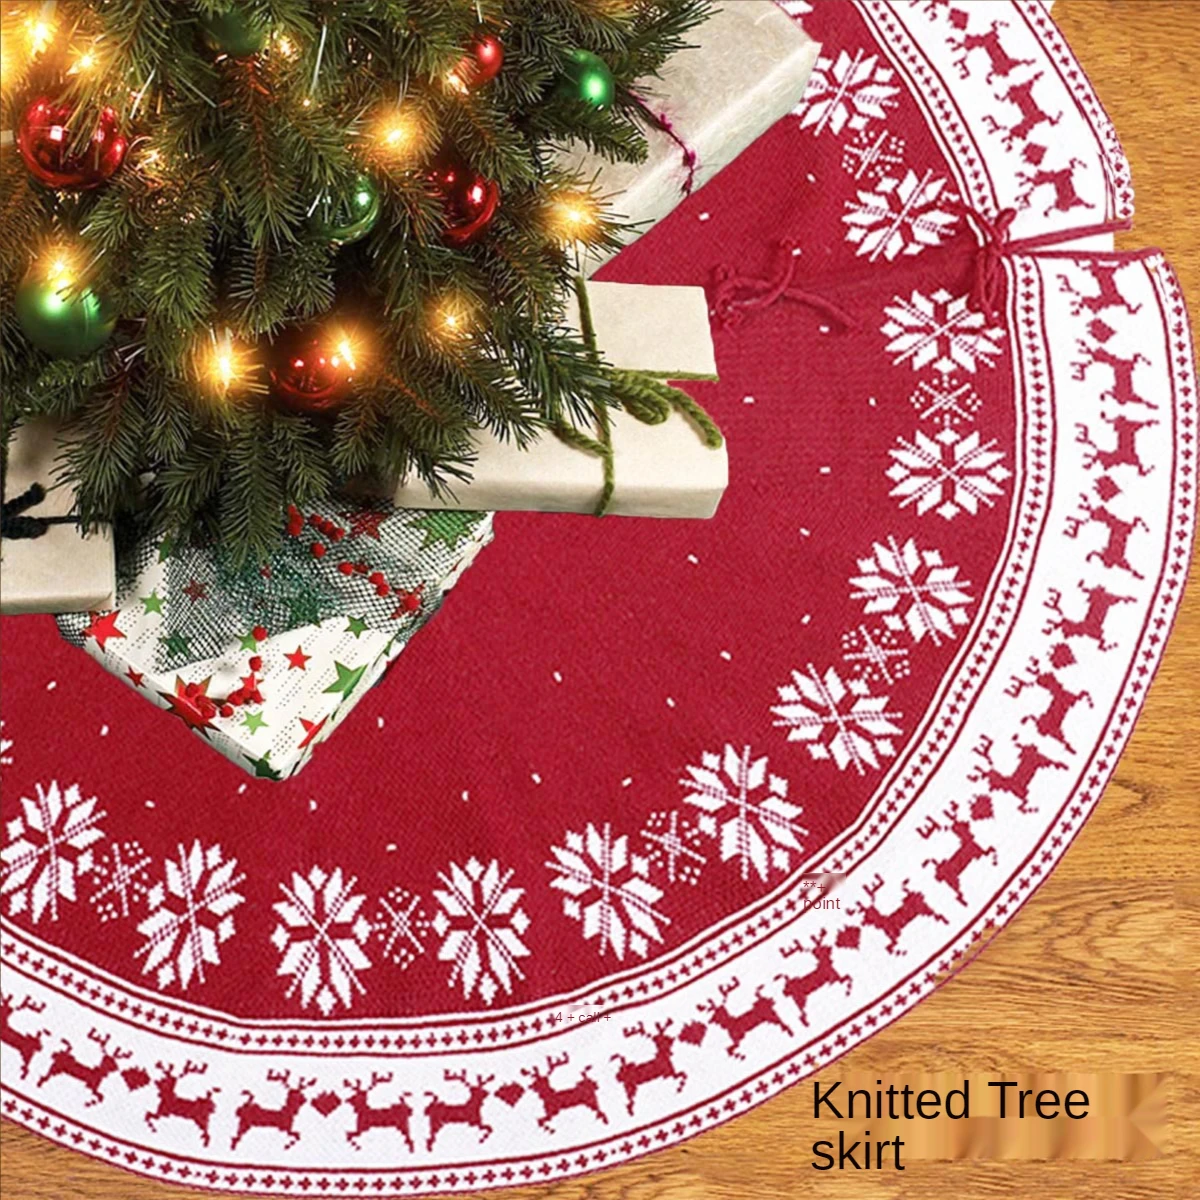 2021 New Christmas Tree Skirt Knitted Tree Skirt Apron Christmas-Tree Skirt Tree Skirt Knitted Snowflake Deer Christmas Gift